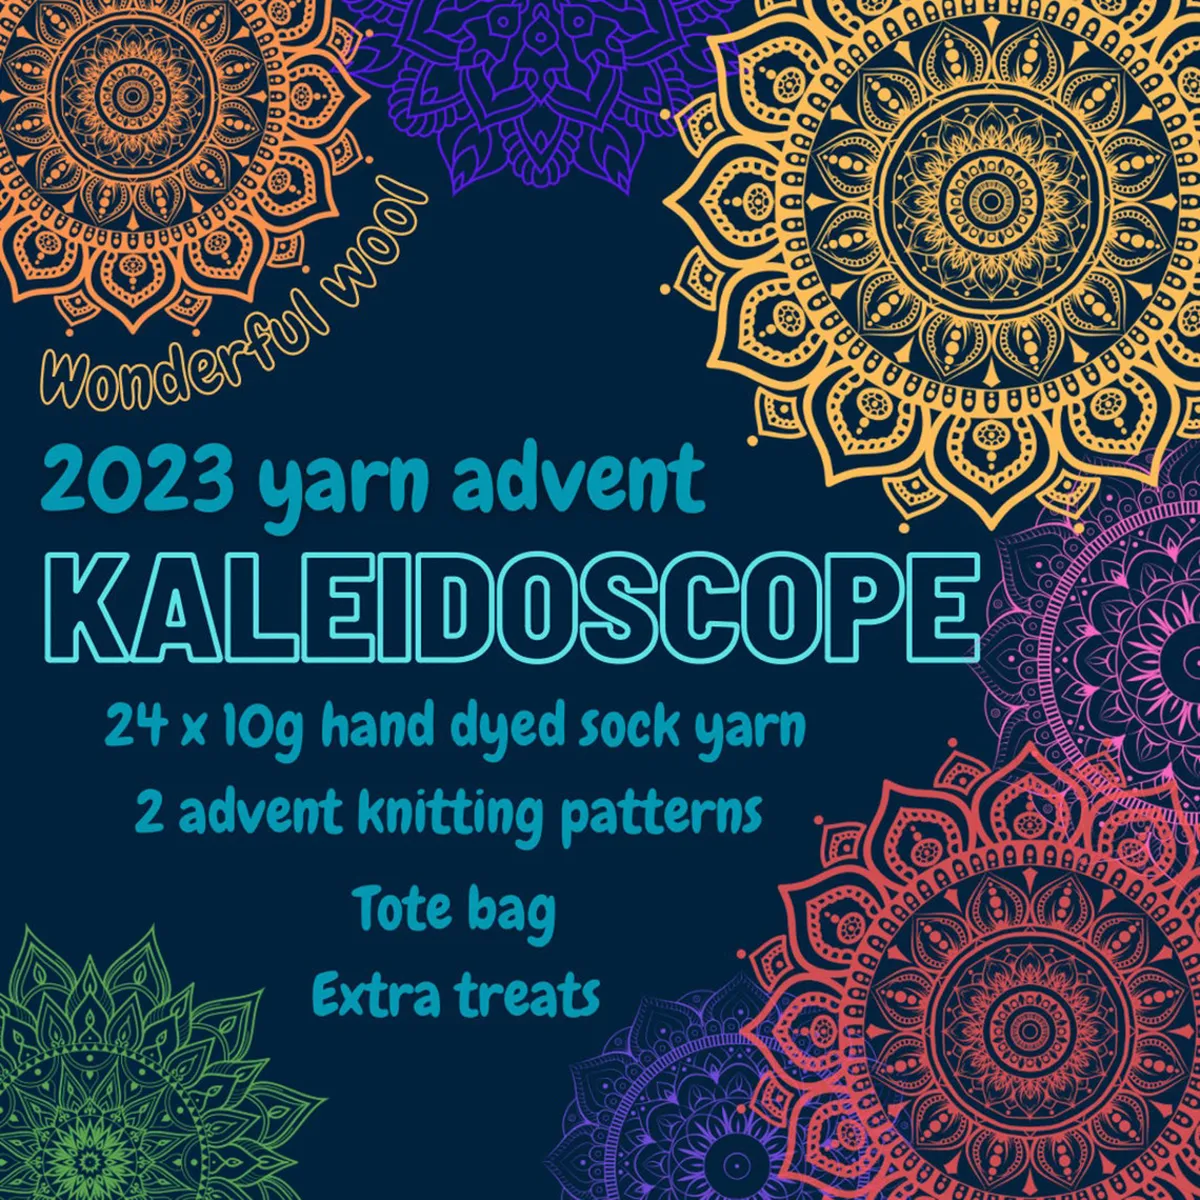 Kaleidoscope yarn advent calendar